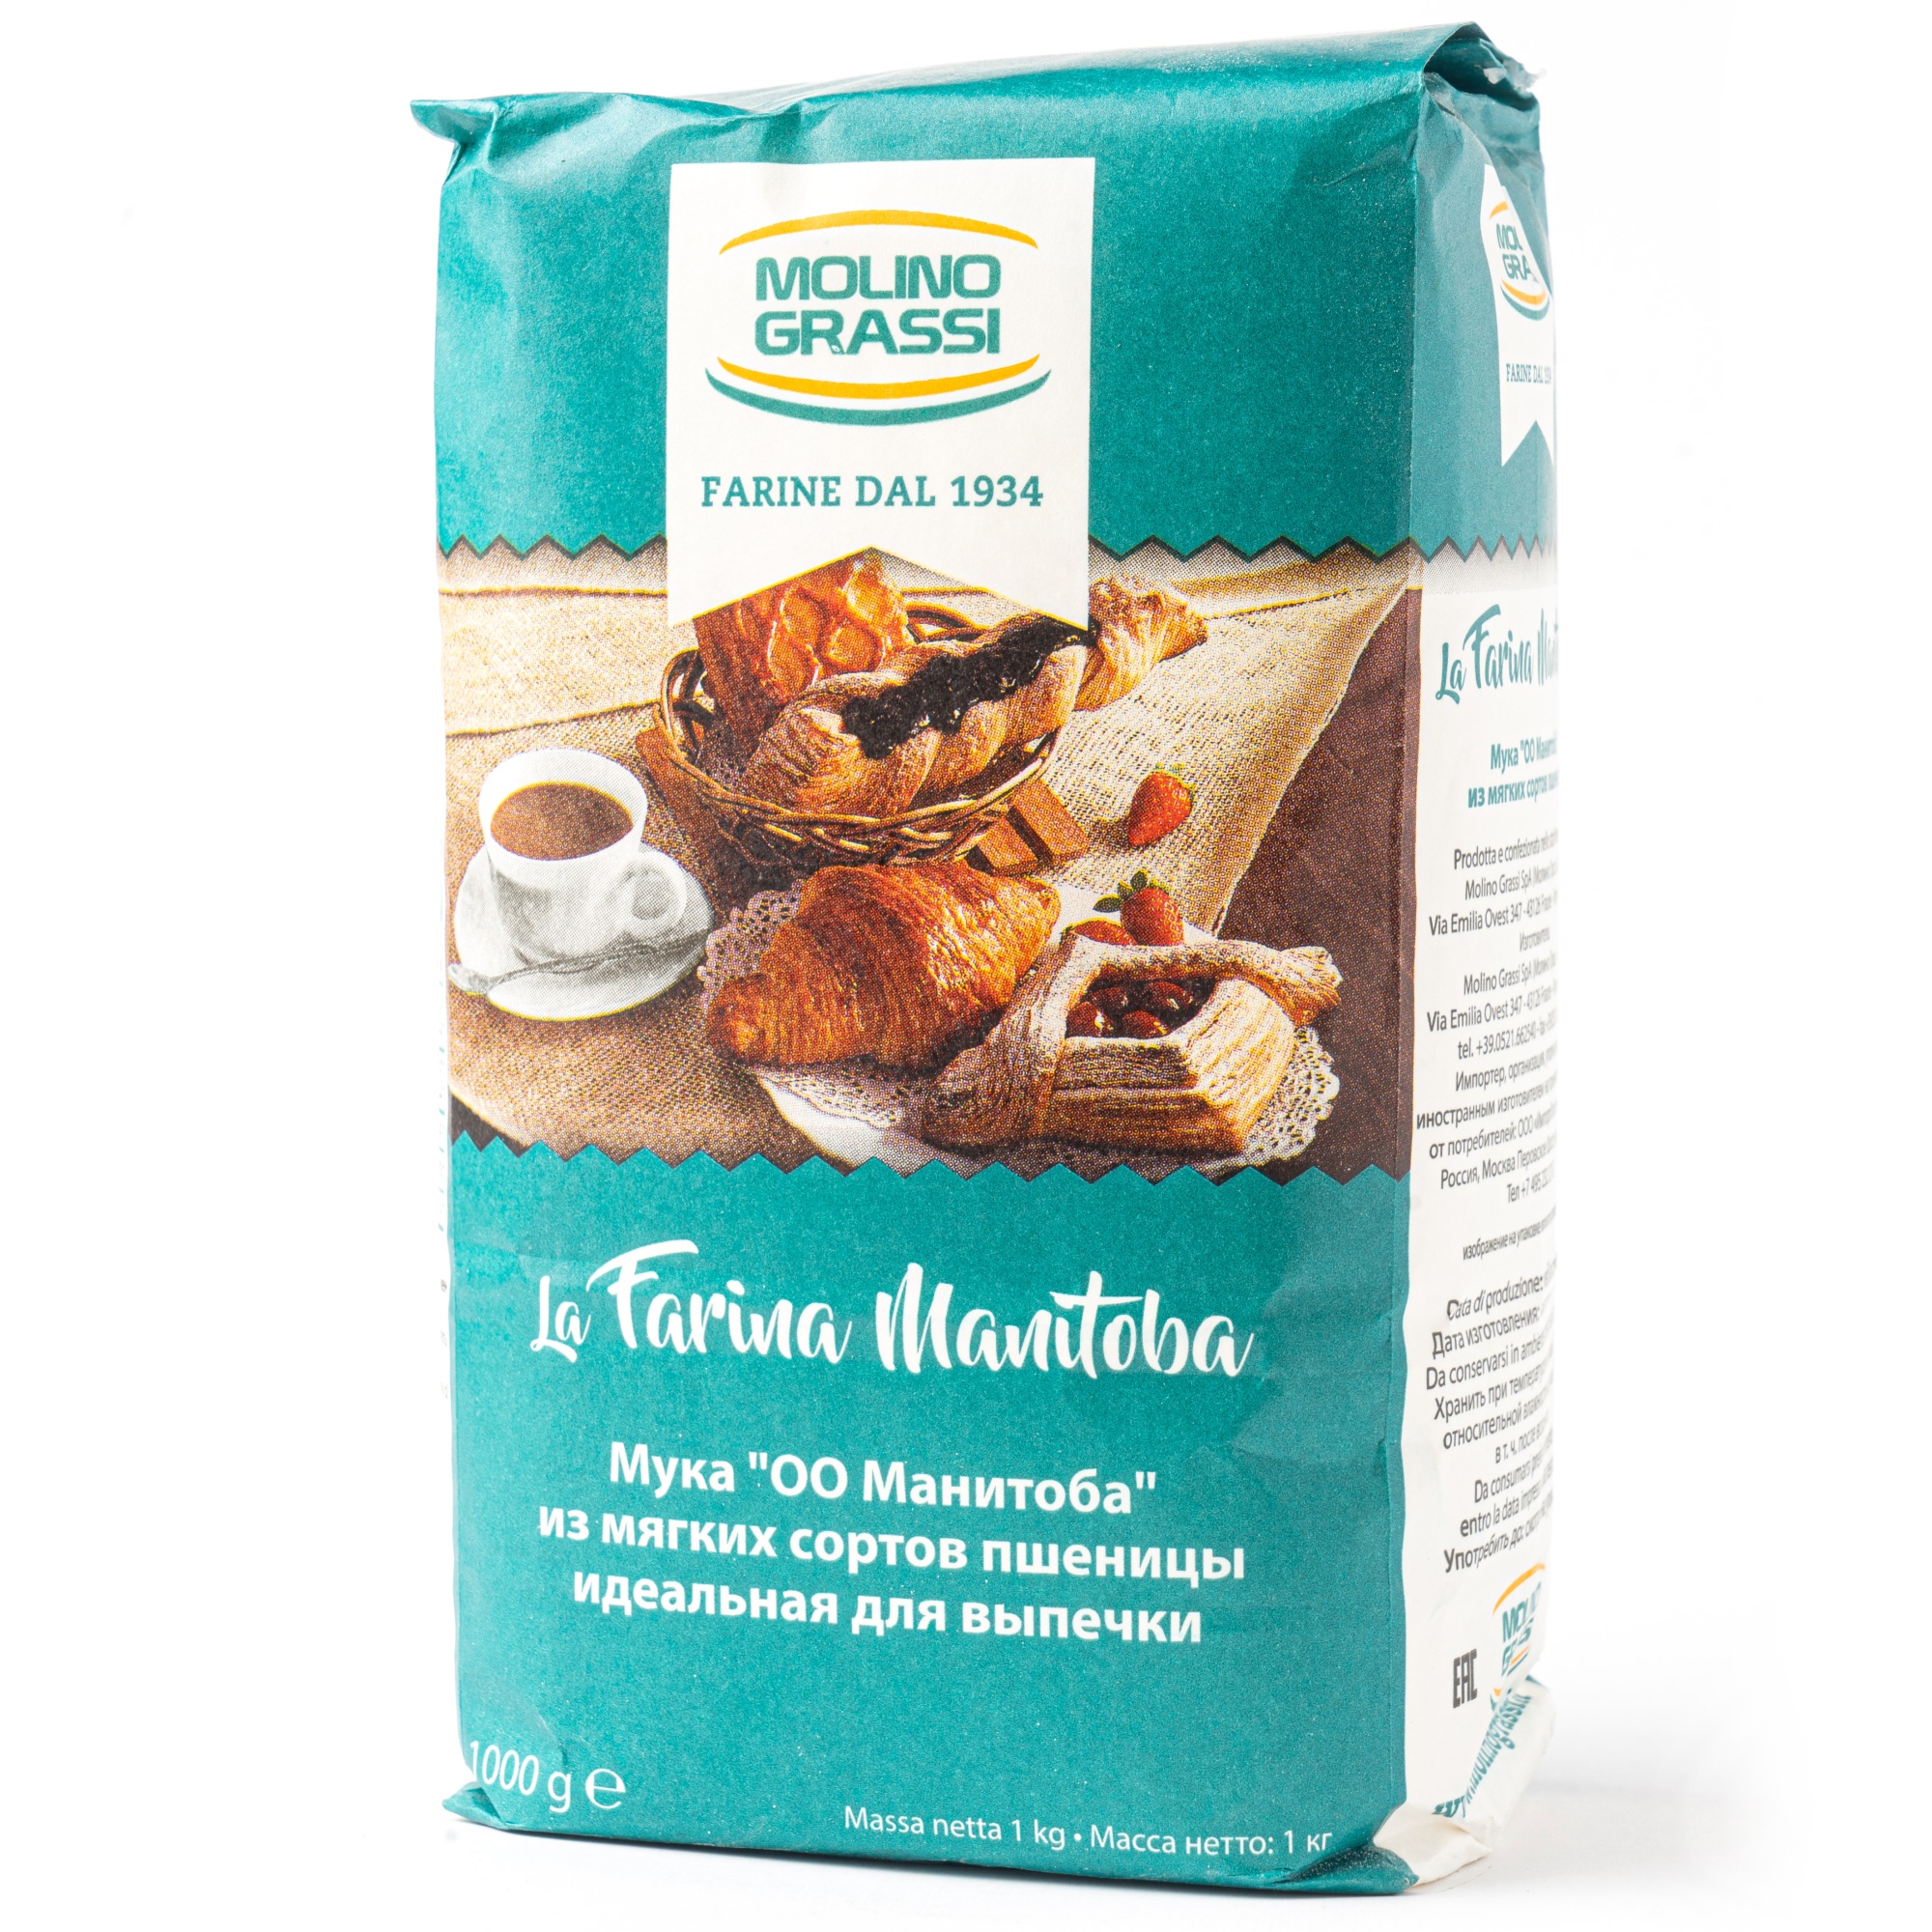 Мука из мягких сортов пшеницы для выпечки Manitoba, Molino Grassi, Италия, 10 кг (10 упаковок по 1 кг)  | Фото — Магазин Andy Chef  1